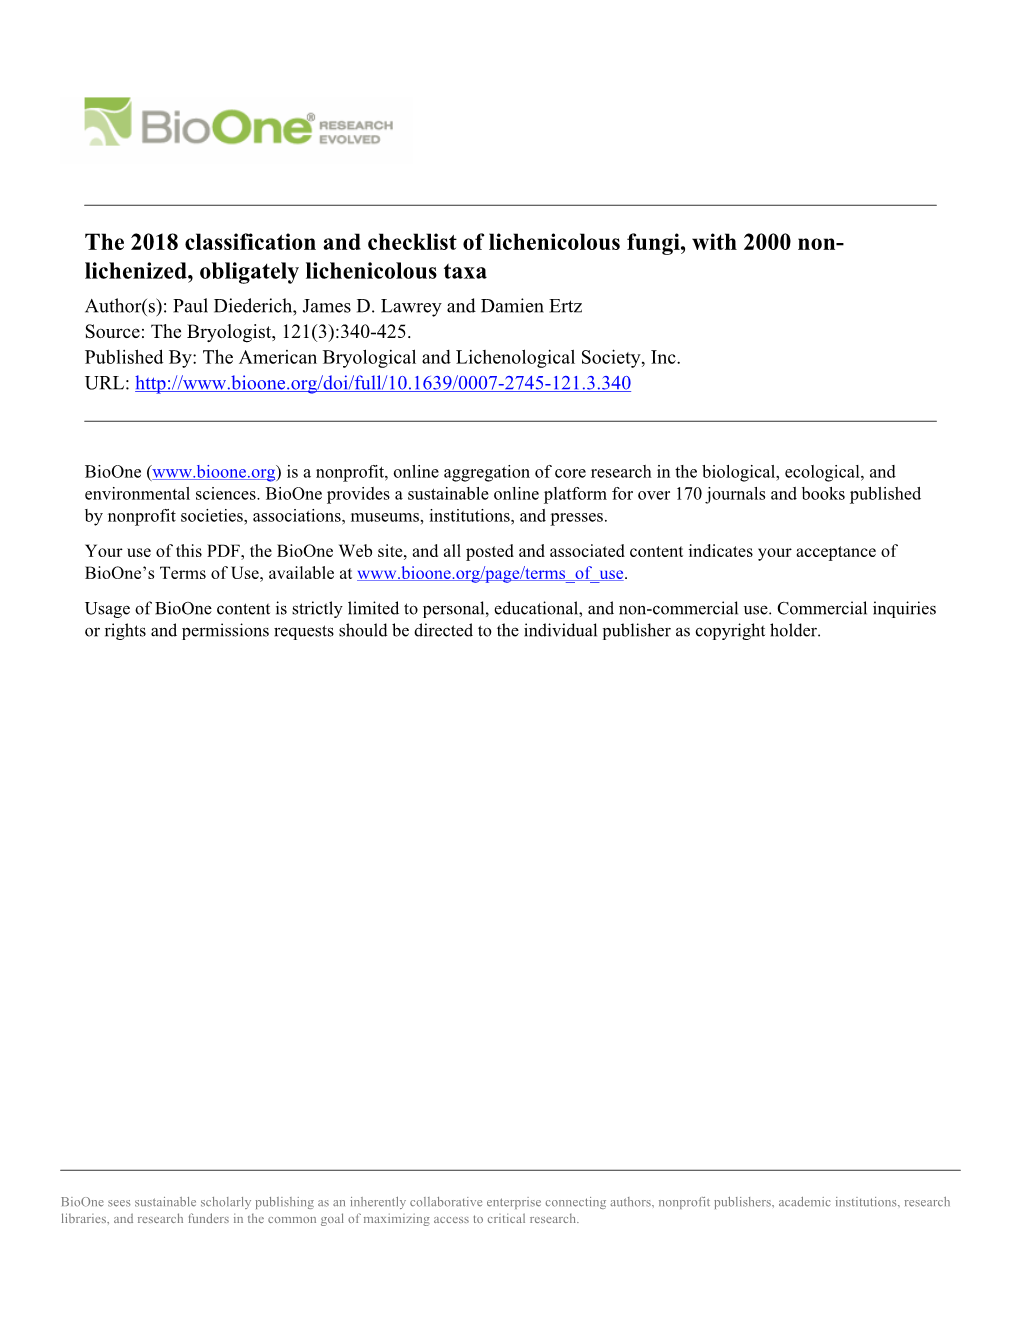 The 2018 Classification and Checklist of Lichenicolous Fungi, with 2000 Non- Lichenized, Obligately Lichenicolous Taxa Author(S): Paul Diederich, James D